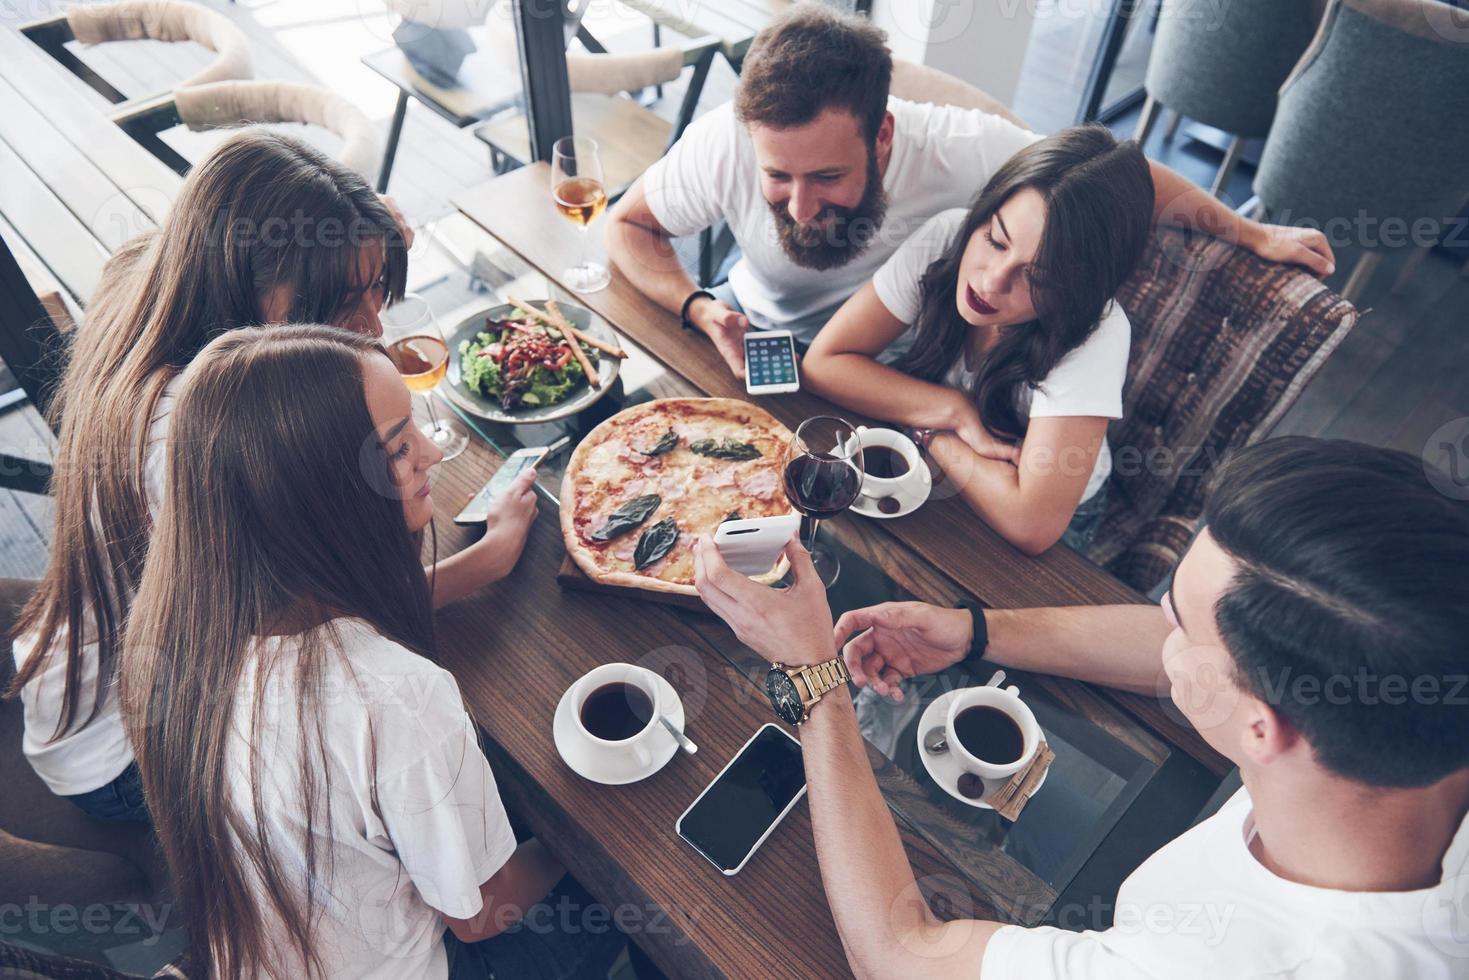 pizza savoureuse sur la table, avec un groupe de jeunes souriants se reposant dans le pub photo